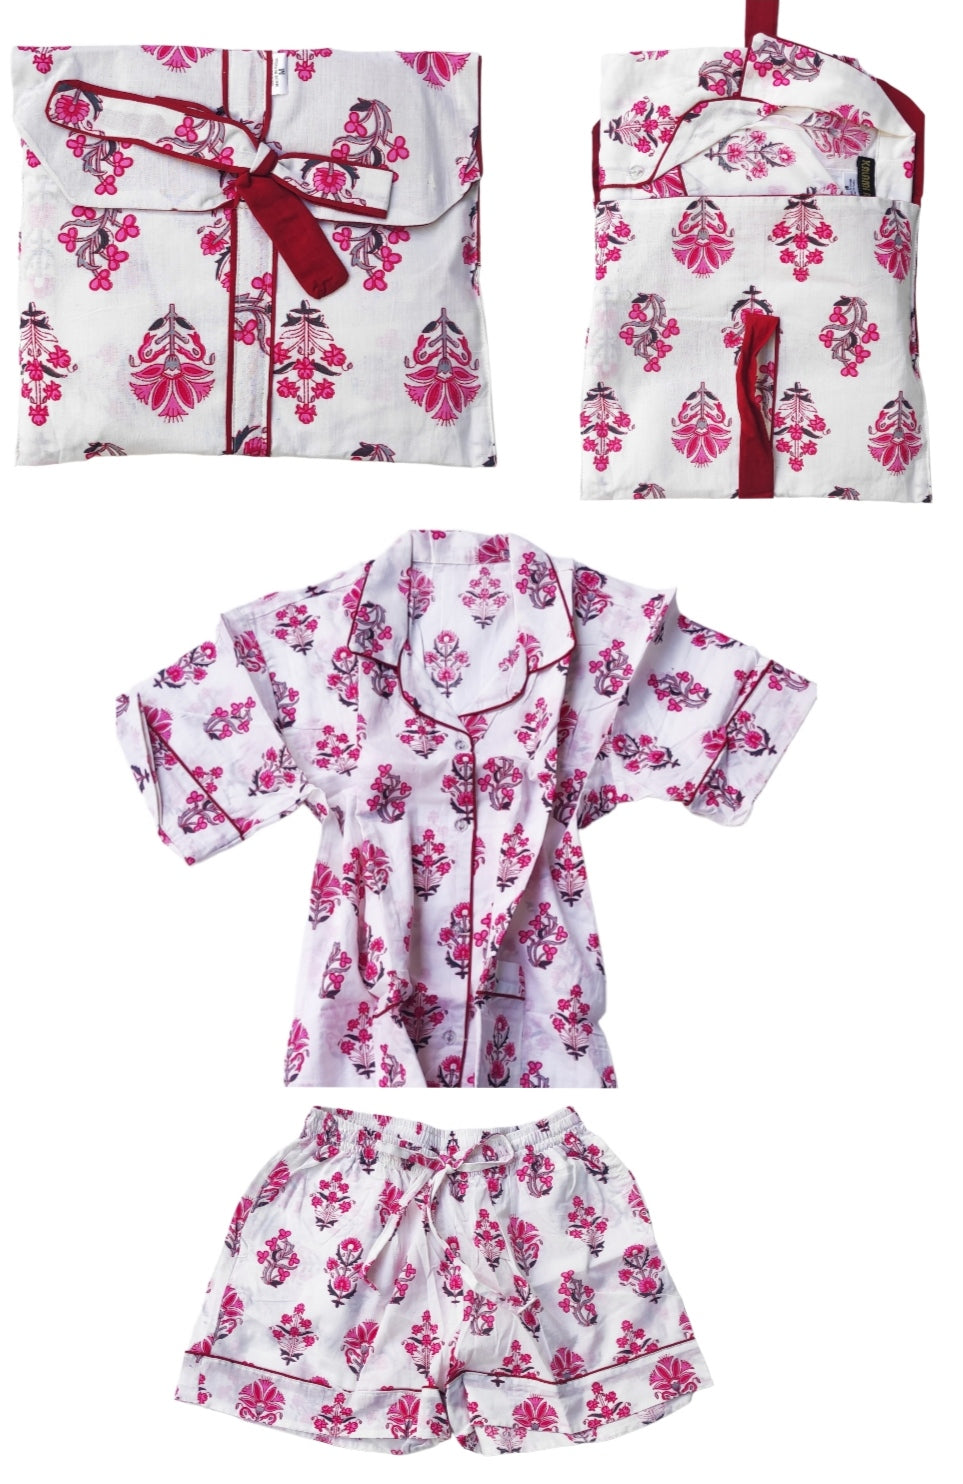 Pijama de mujer. Colores blanco, rosa y granate. Algodón 100%. Bolsa a juego para guardarlo.